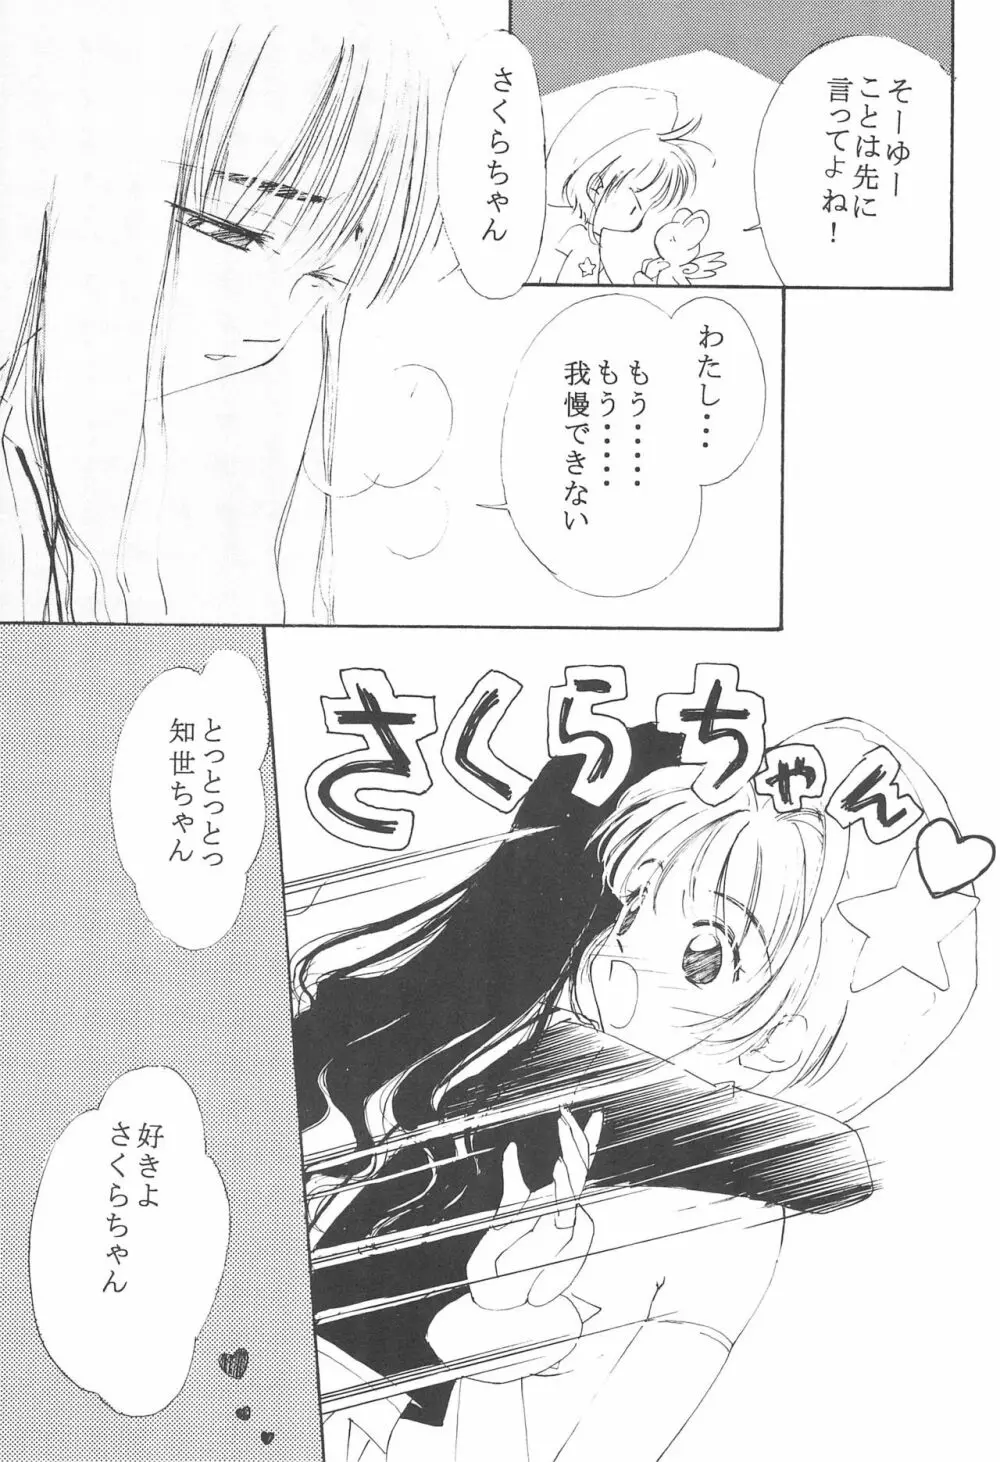 MoMo no Yu 8 11ページ